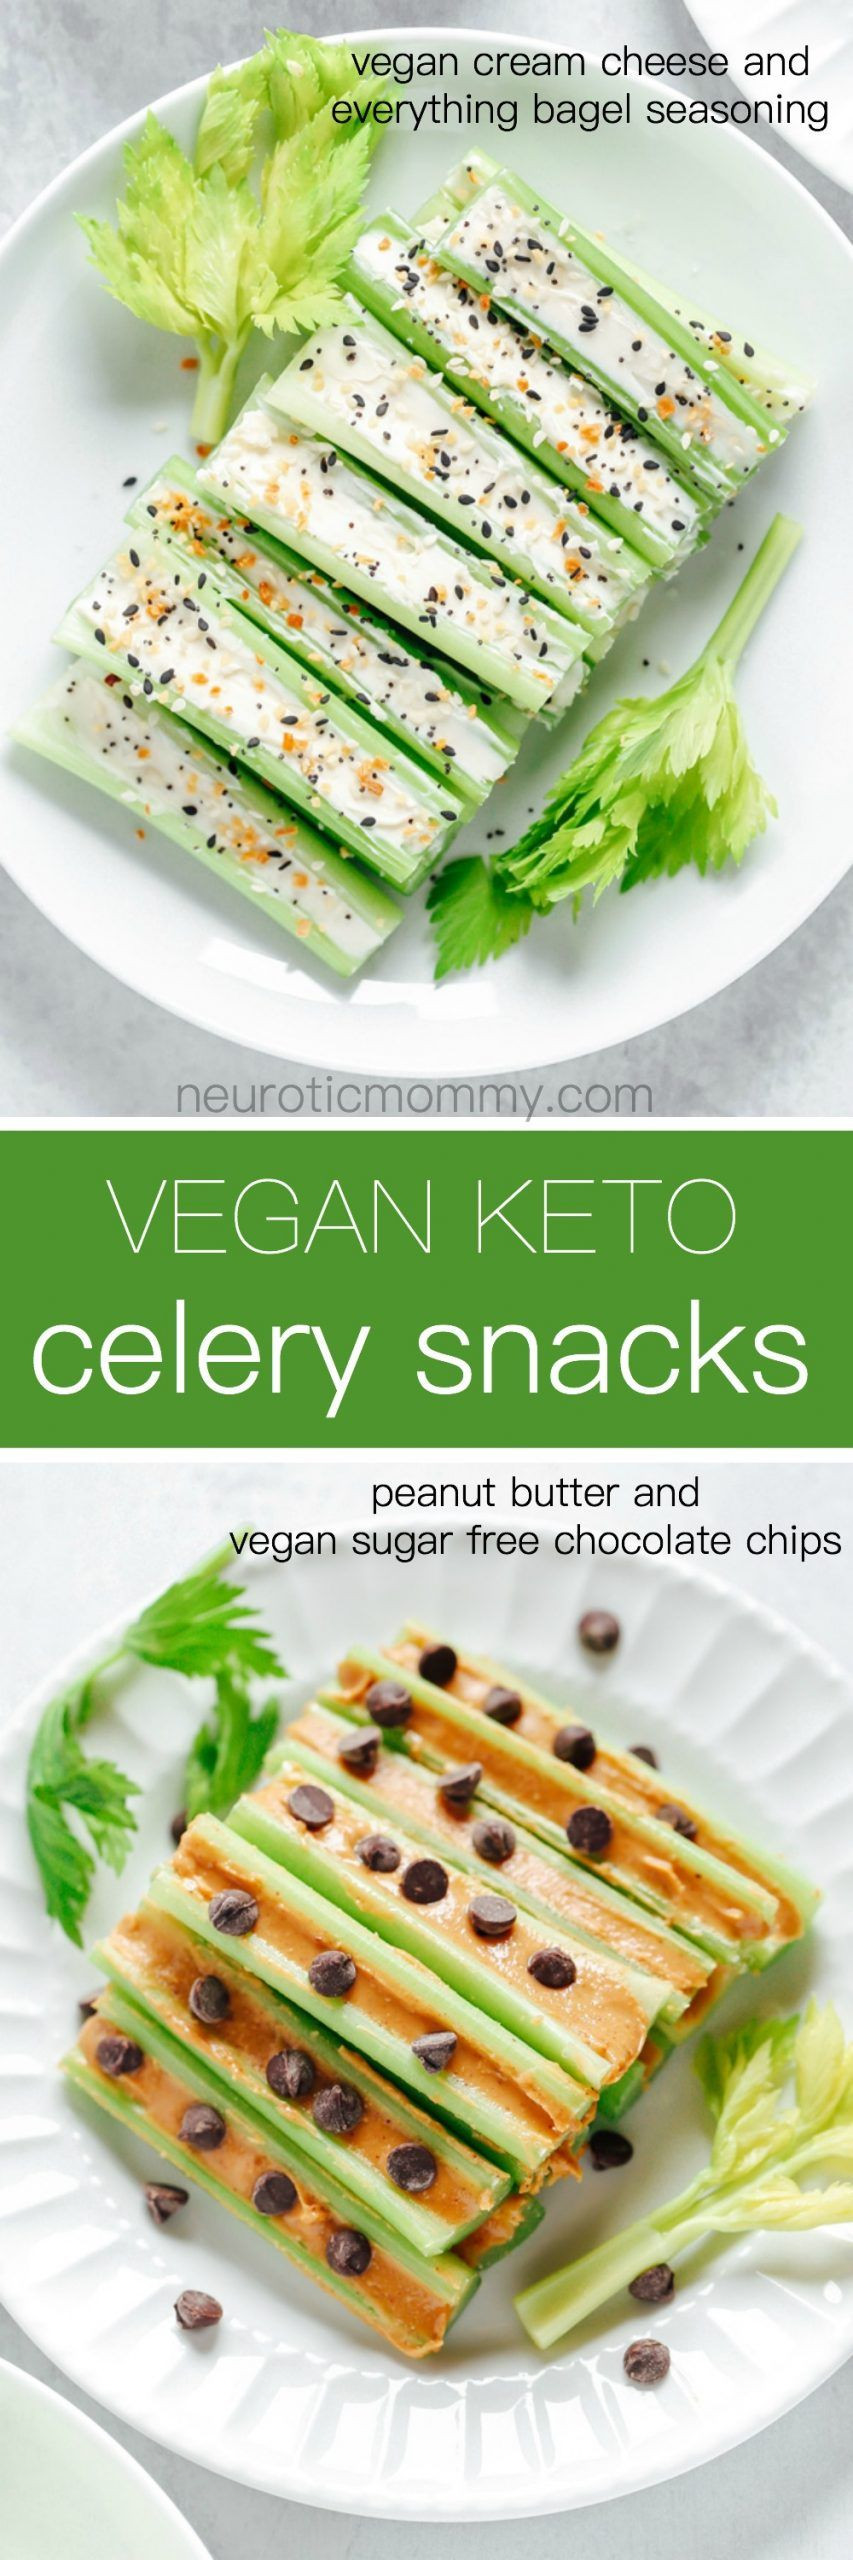 Vegan Keto Appetizers
 Vegan Keto Celery Snacks Recipe in 2020